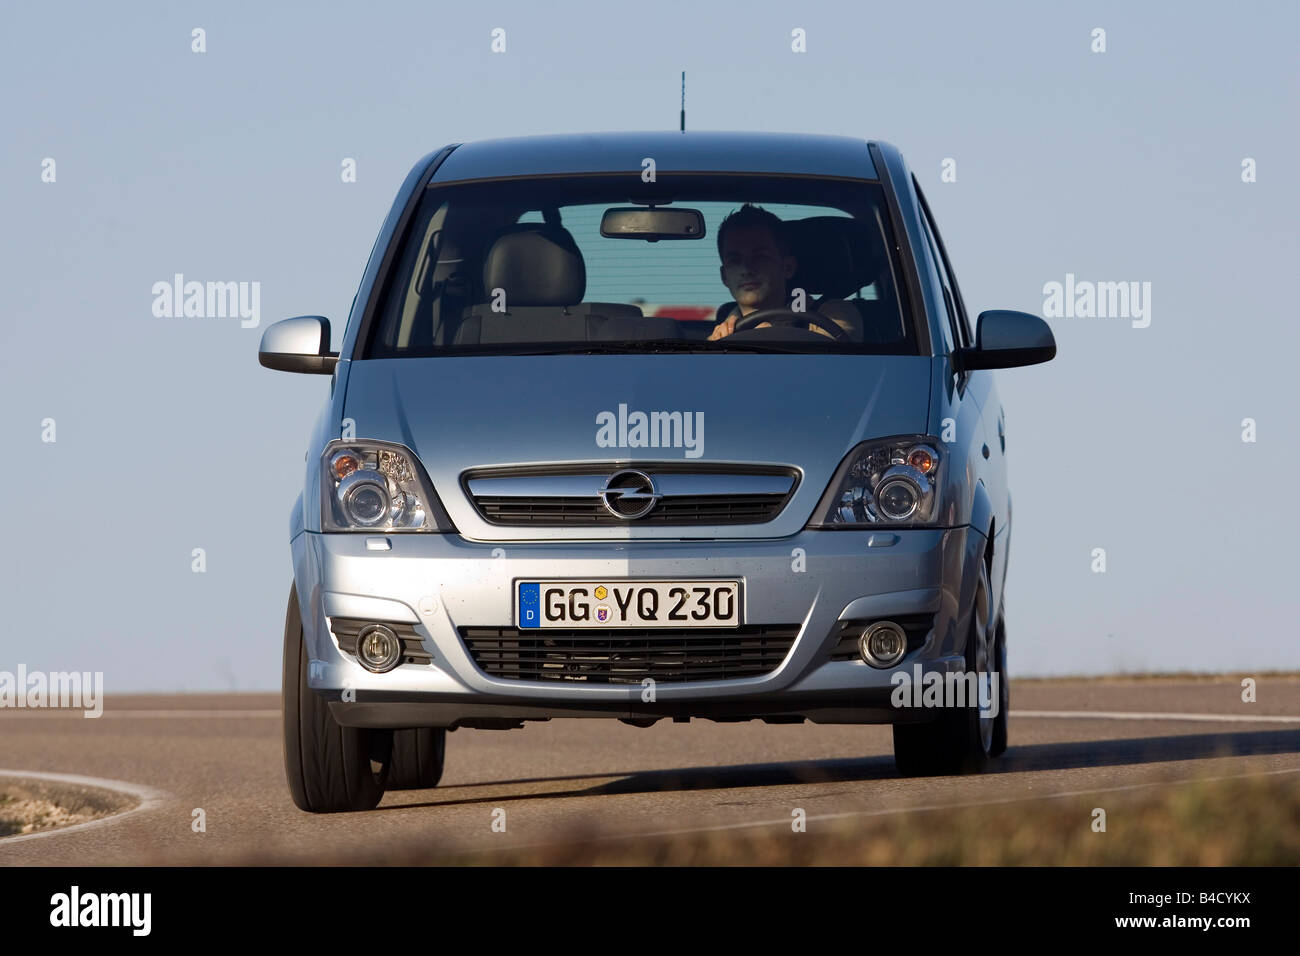 Opel Meriva 1.7 CDTi, année modèle 2007, d'argent, la conduite, la  diagonale de l'arrière, vue arrière, country road Photo Stock - Alamy